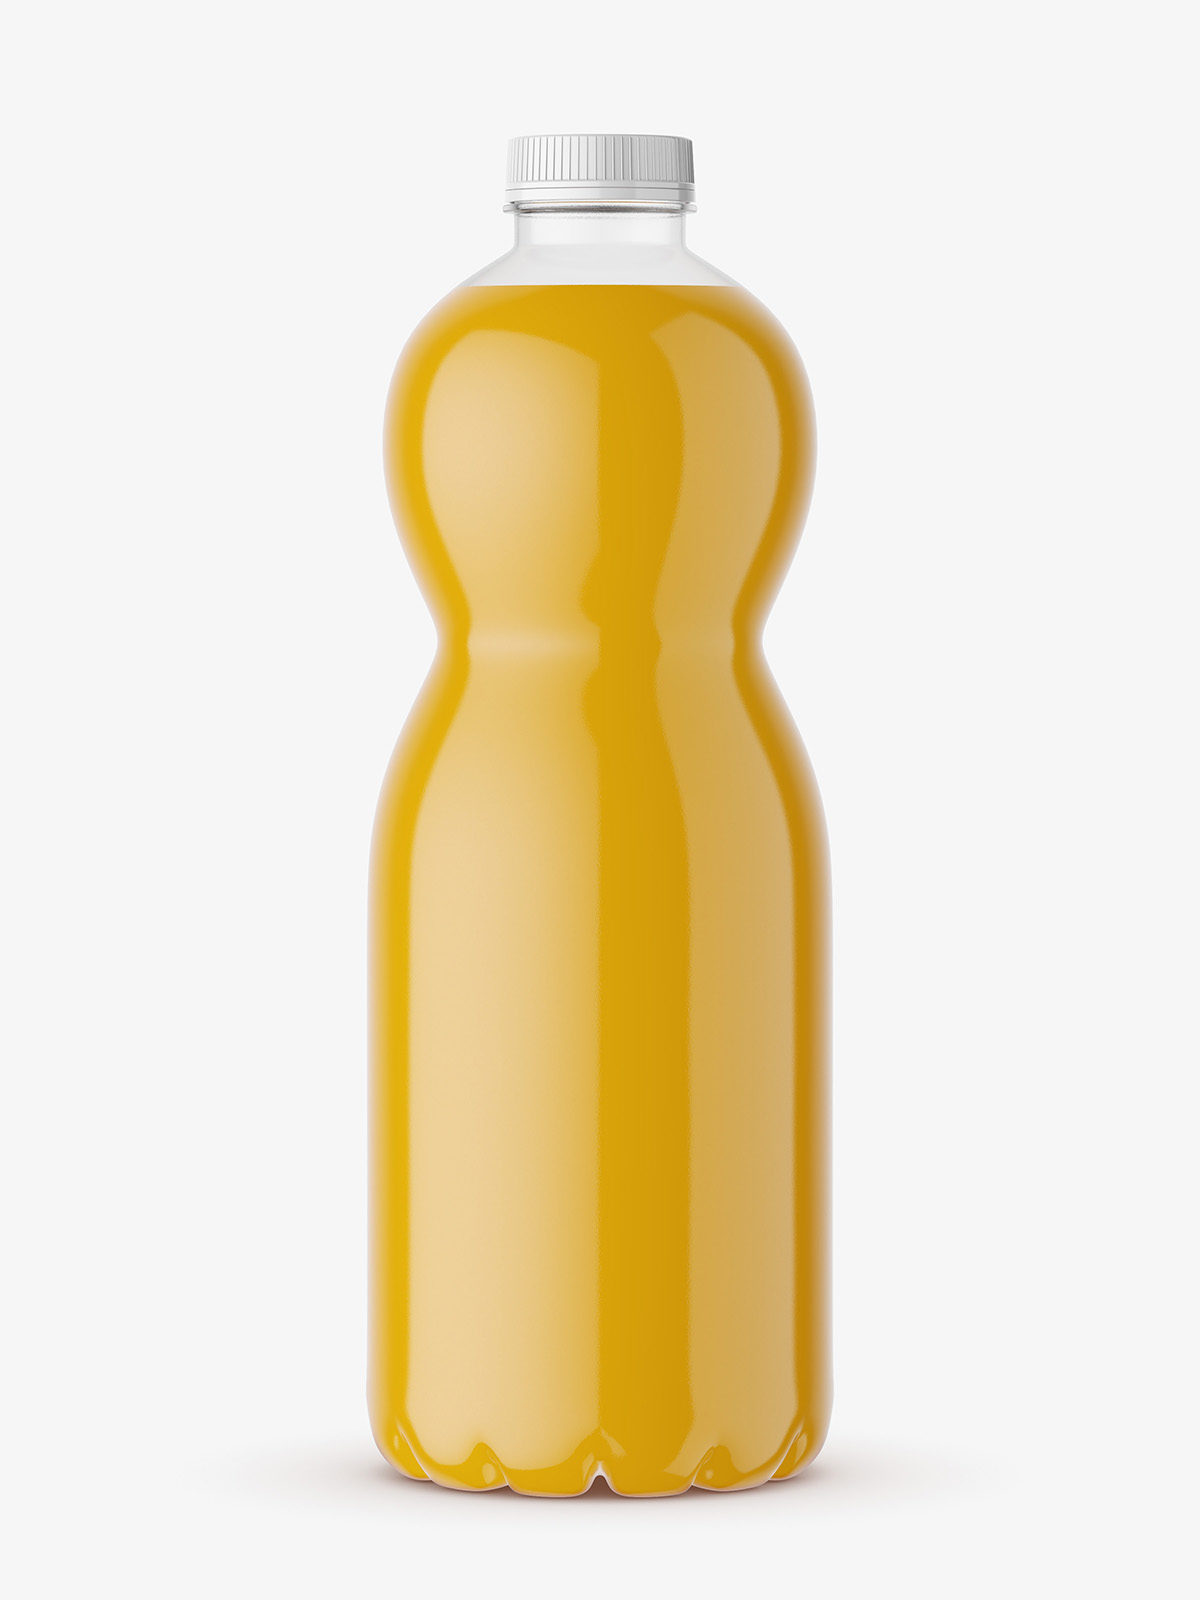 https://smartymockups.com/wp-content/uploads/2018/03/Orange_Juice_Bottle_Mockup_1A.jpg